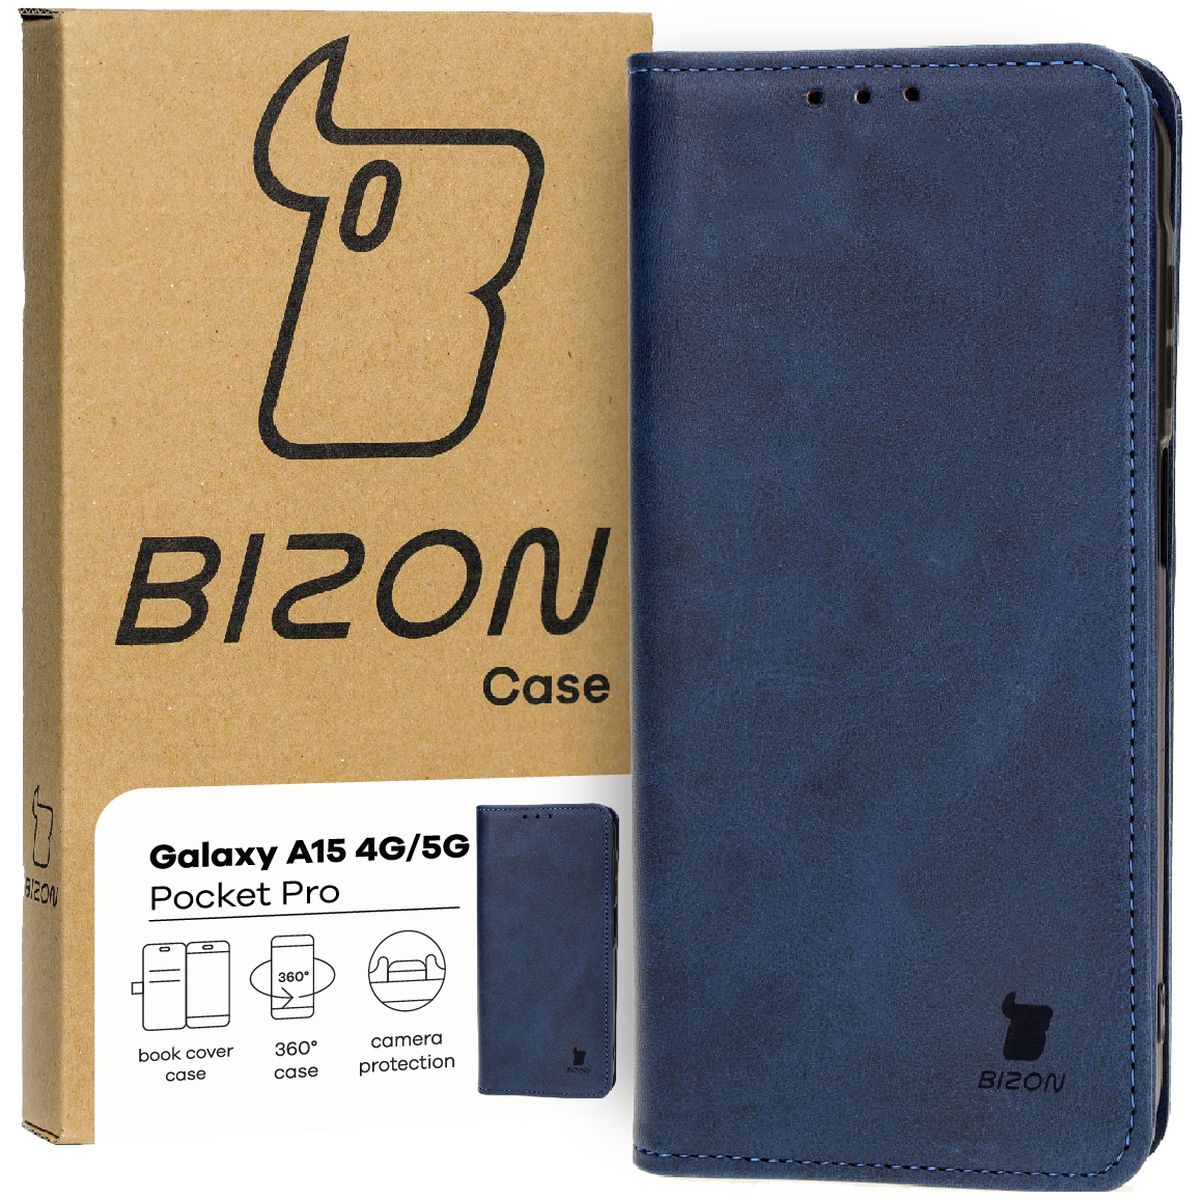 Schutzhülle für Galaxy A15 4G/5G, Bizon Case Pocket Pro, Dunkelblau